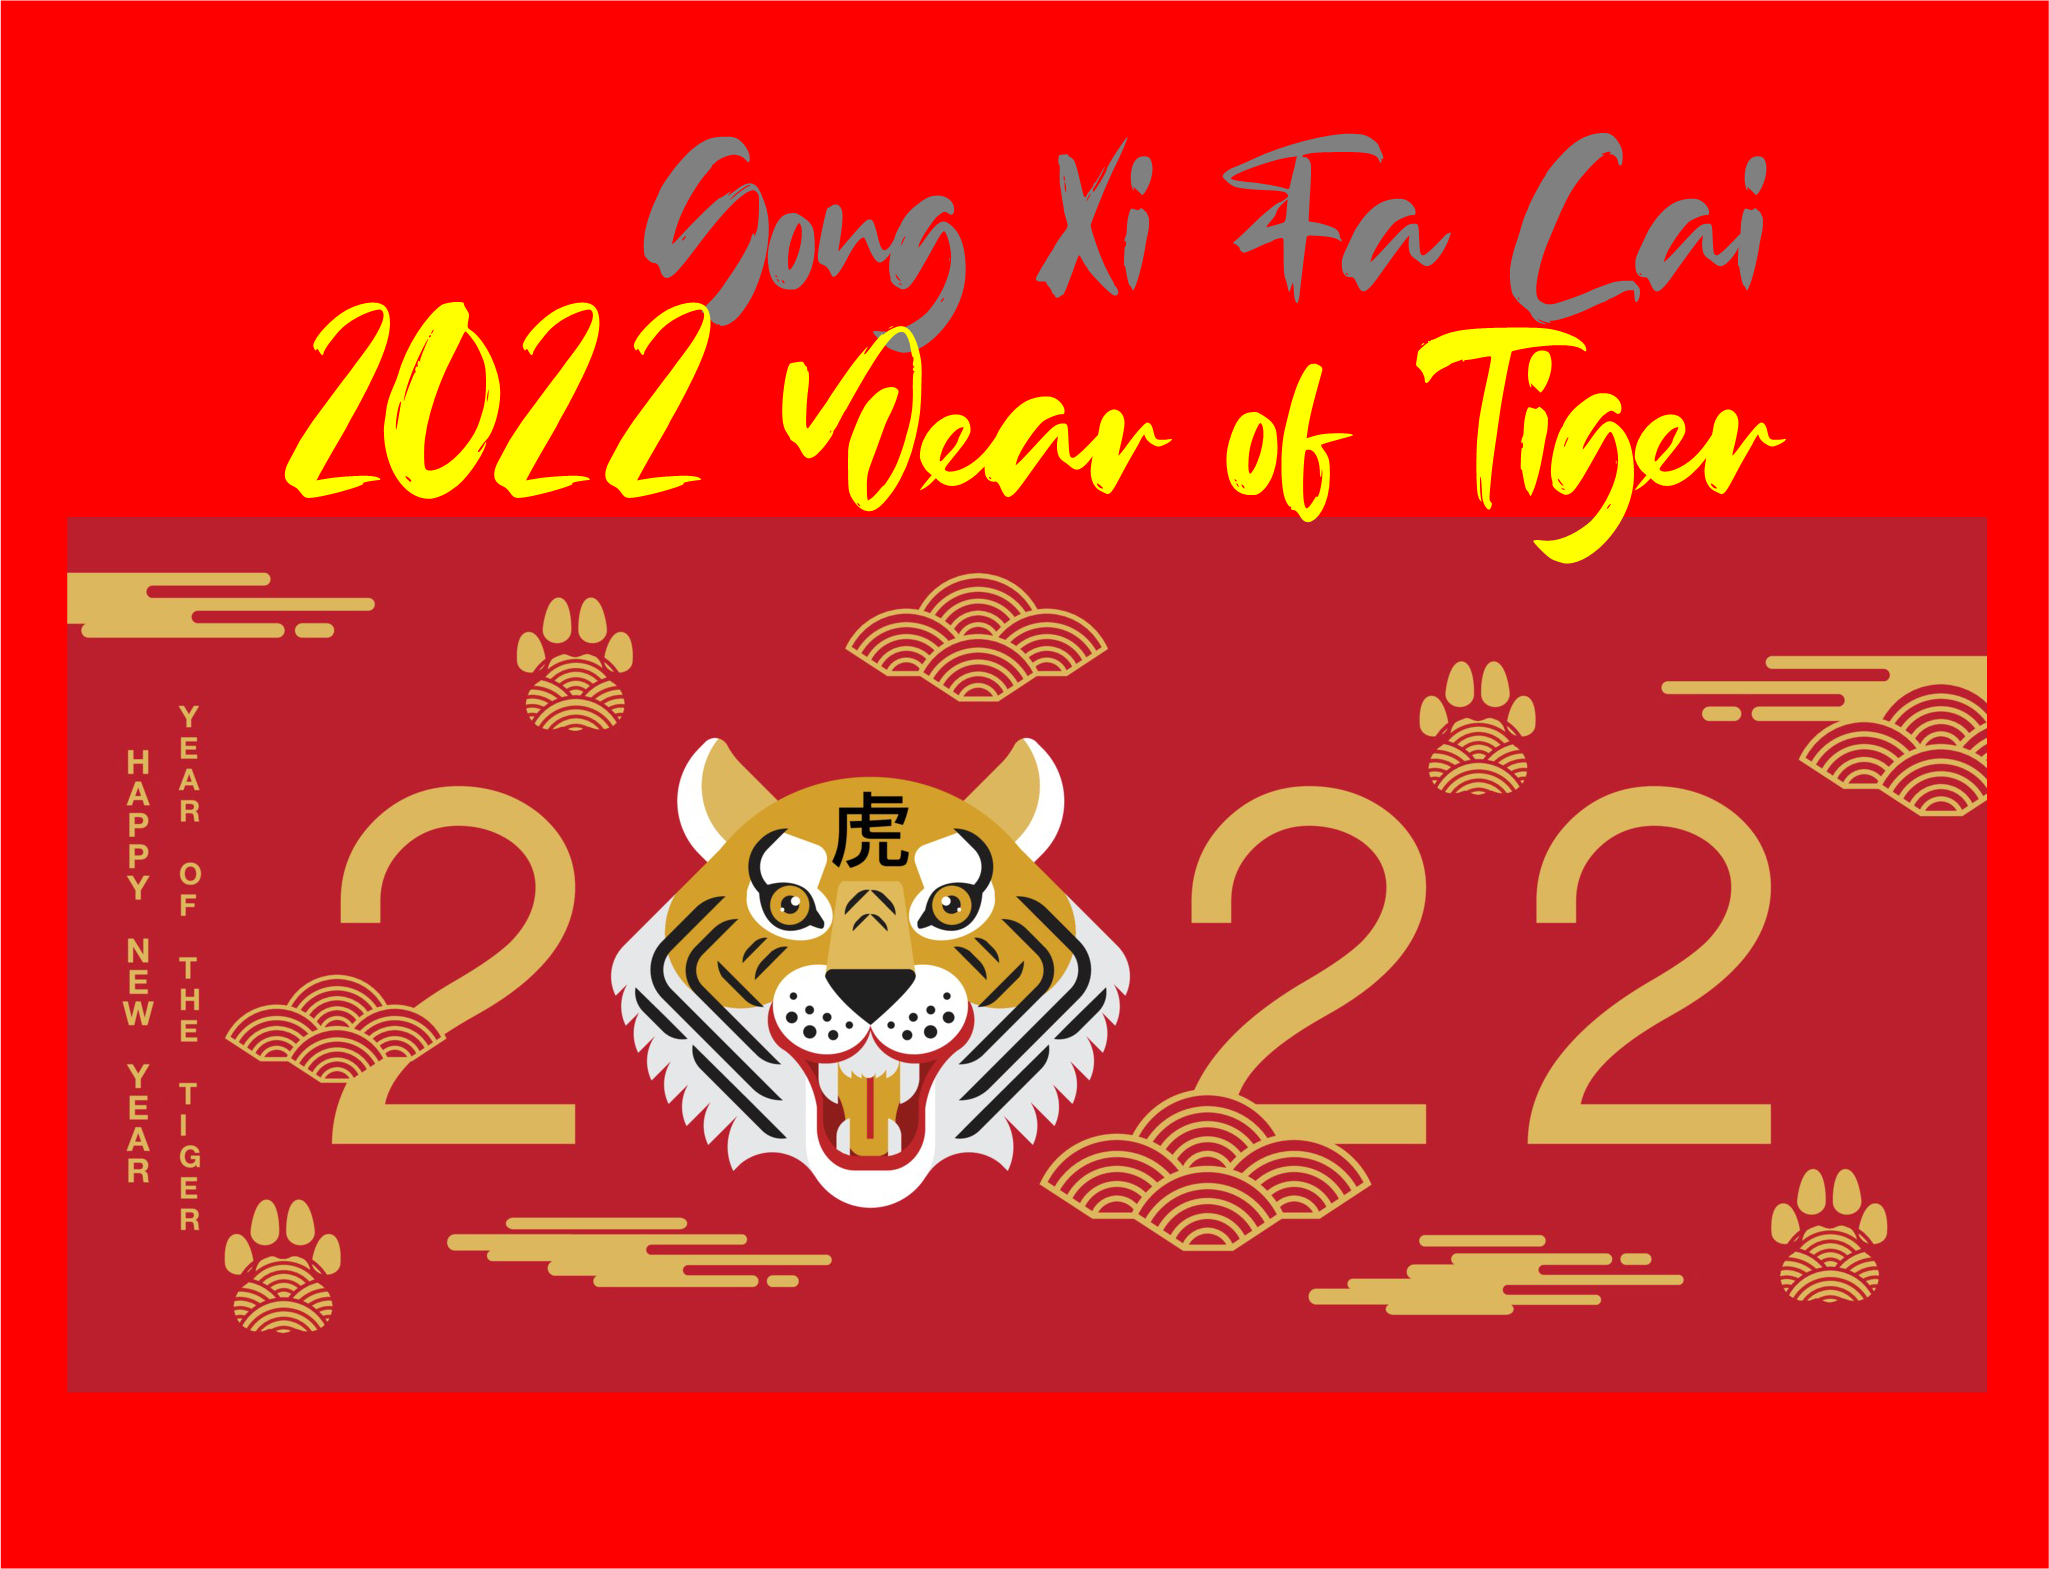 2022 Year of Tiger, Gong Xi Fa Cai Clothing Mugs and more